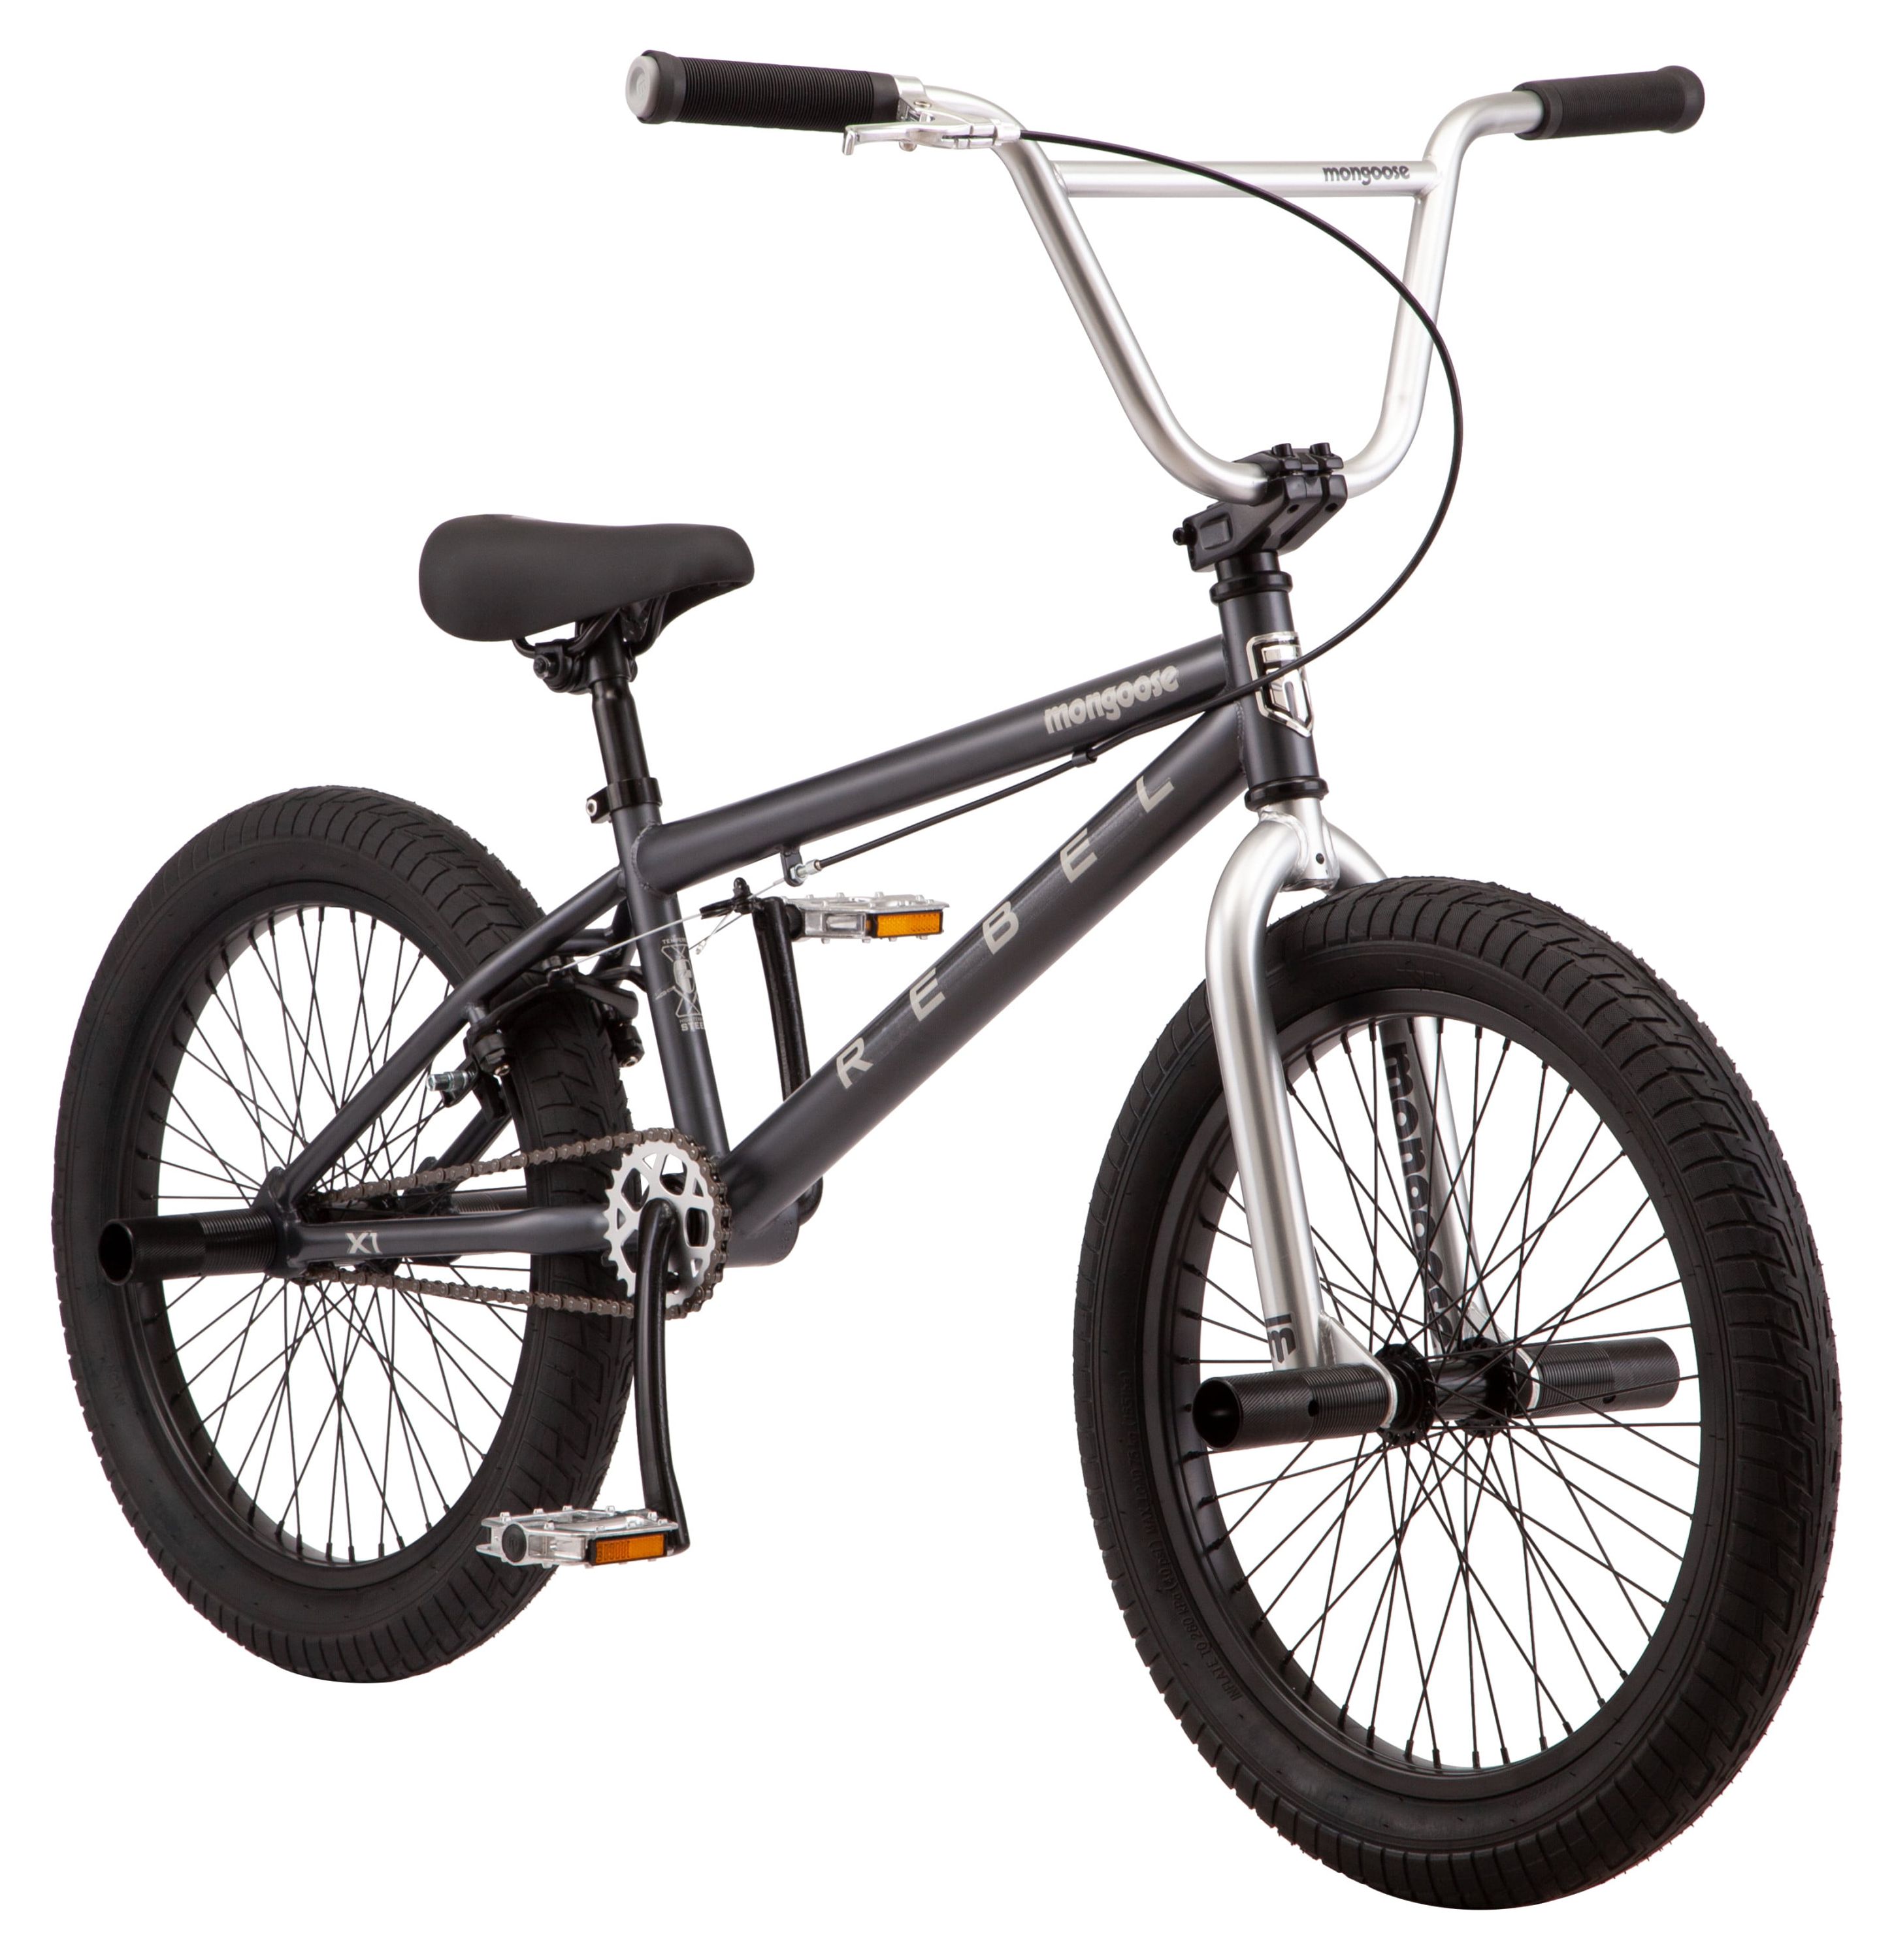 Mongoose Rebel X1 BMX Bike, 20in. Wheels, Boys/Girls, Gray - image 3 of 10